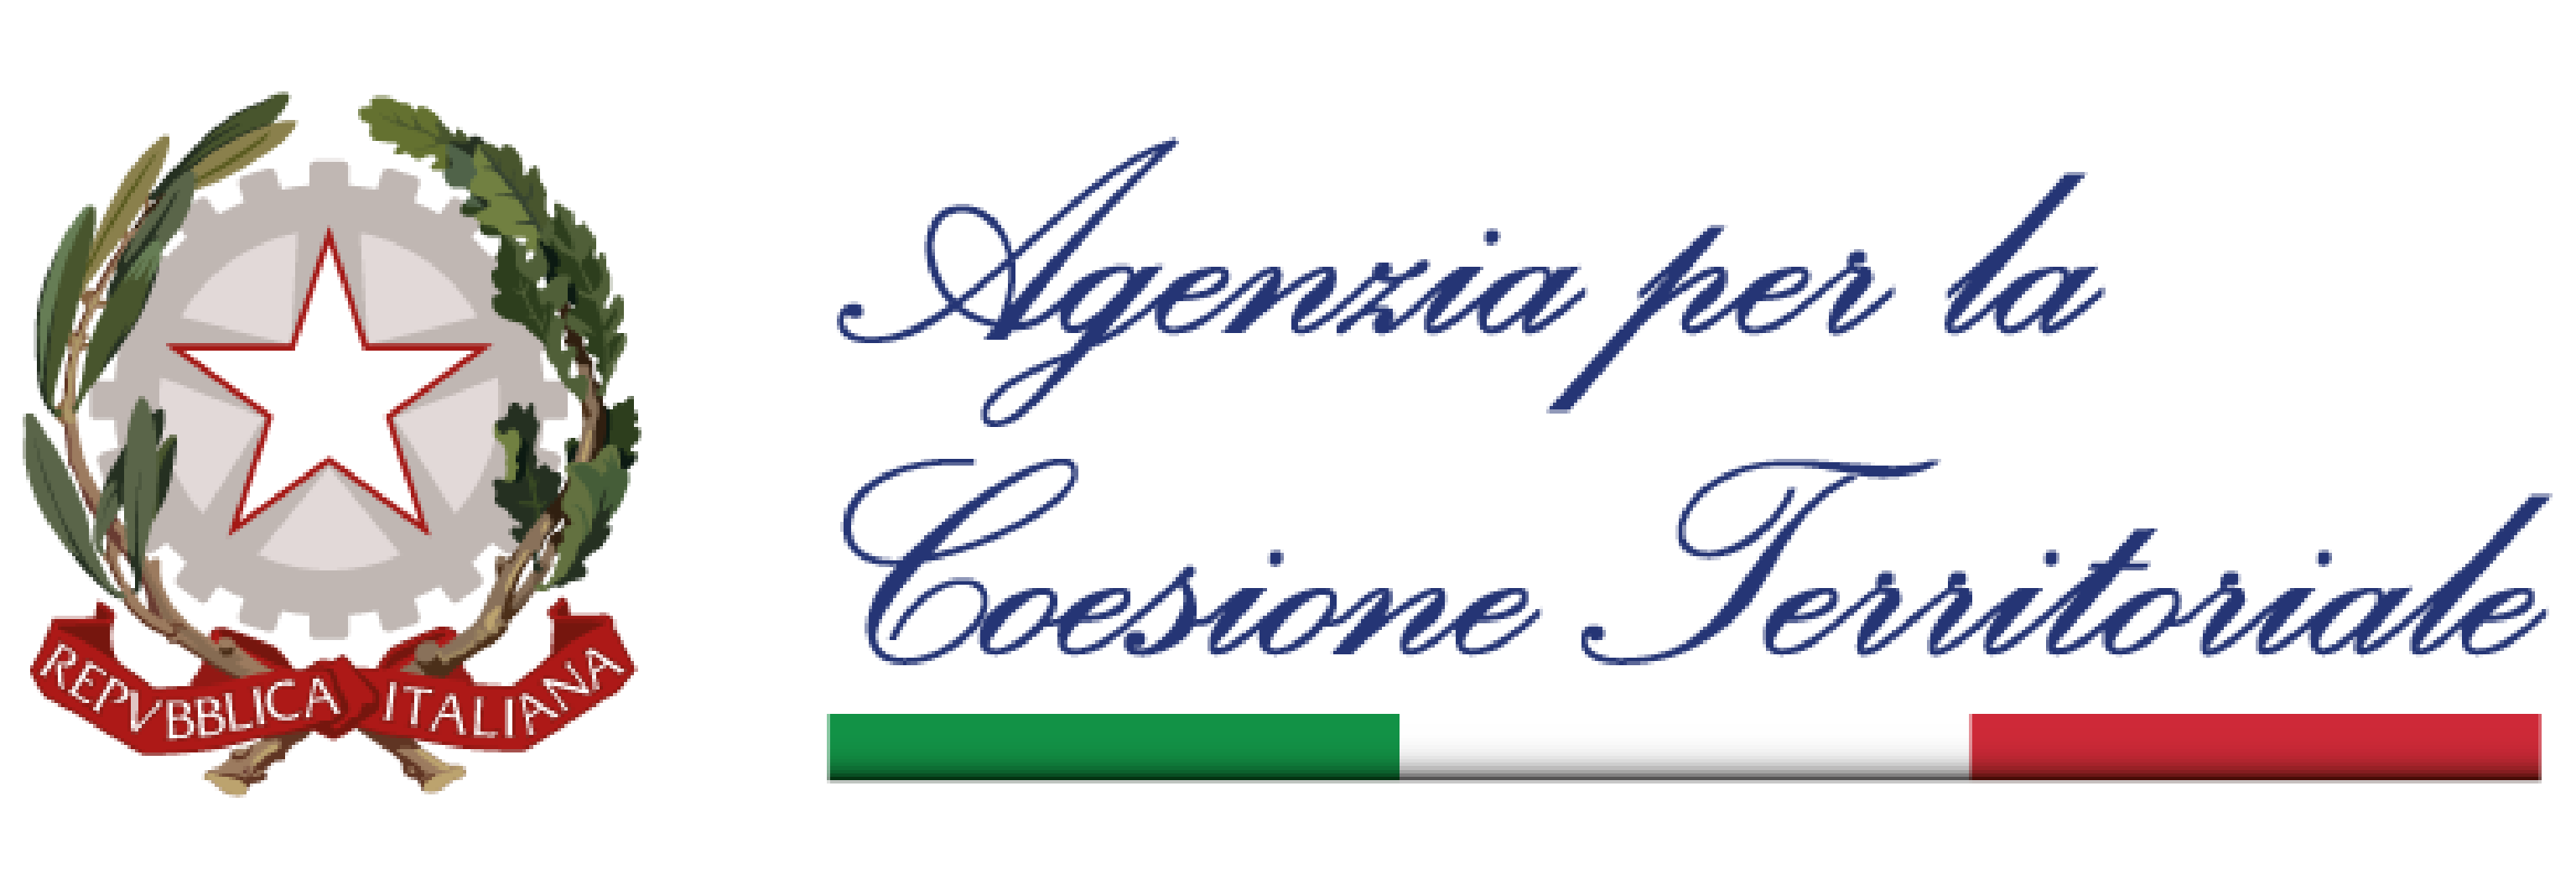 logo Agenzia per la coesione territoriale